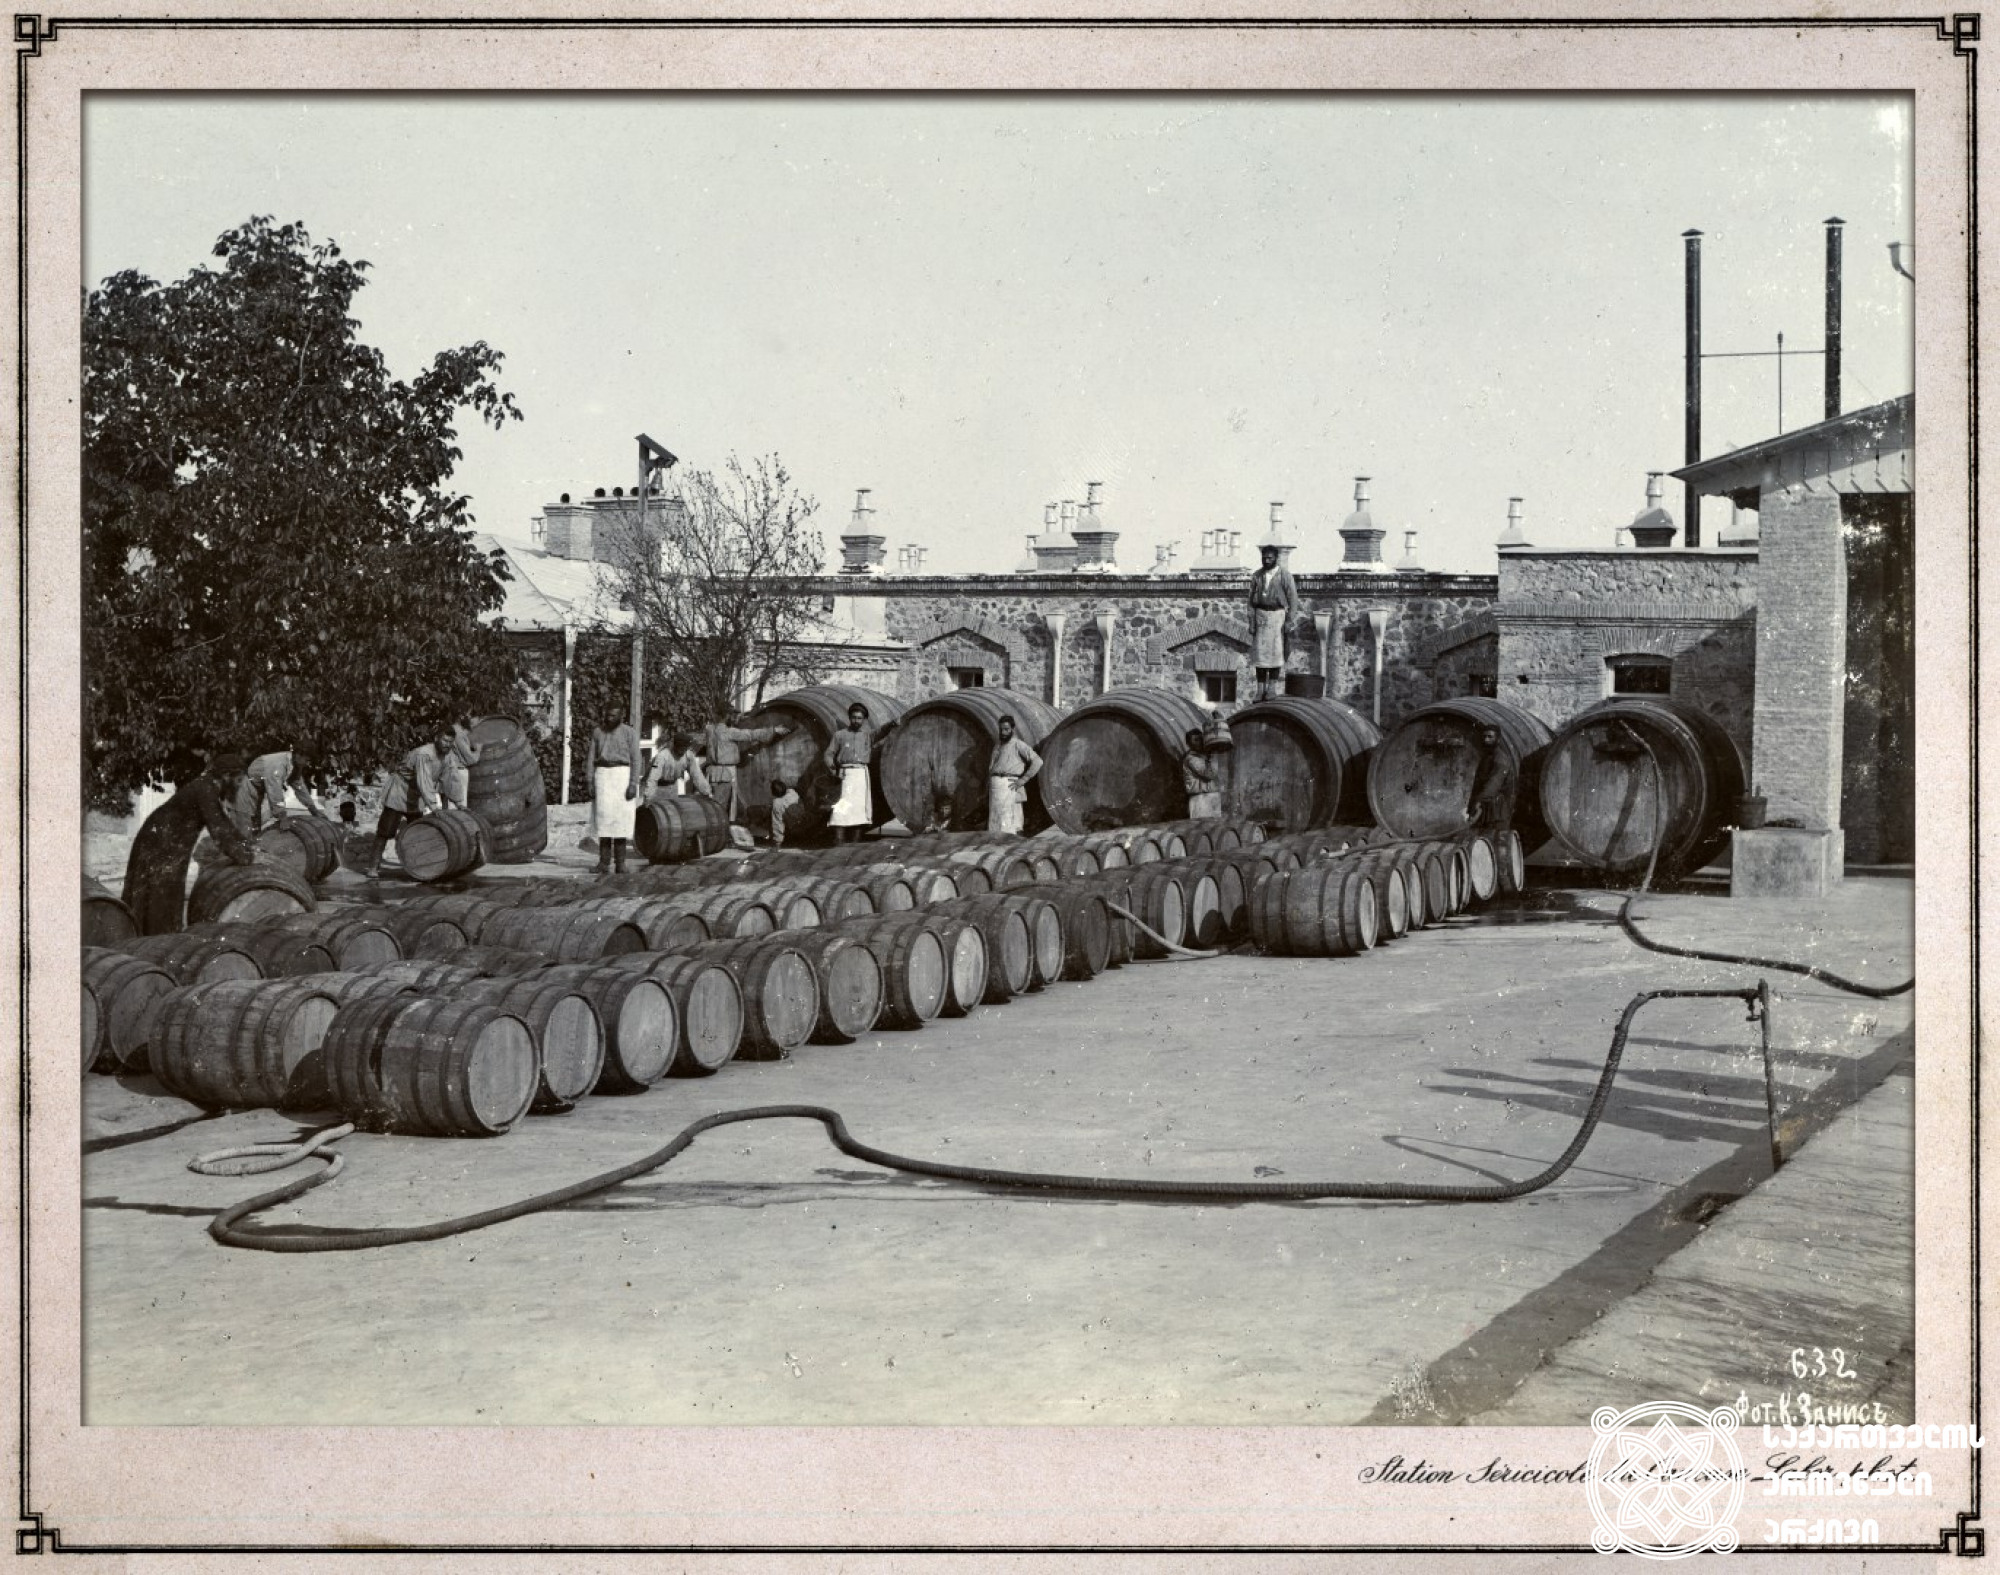 კასრების რეცხვა ღვინის ქარხანაში
<br>
კახეთი, 1900-1905 წლები <br>
ფოტო: კონსტანტინე ზანისი <br>

Barrel washing in the wine factory, Kakheti. <br>
1900-1905 <br>
Photo by Konstantin Zanis